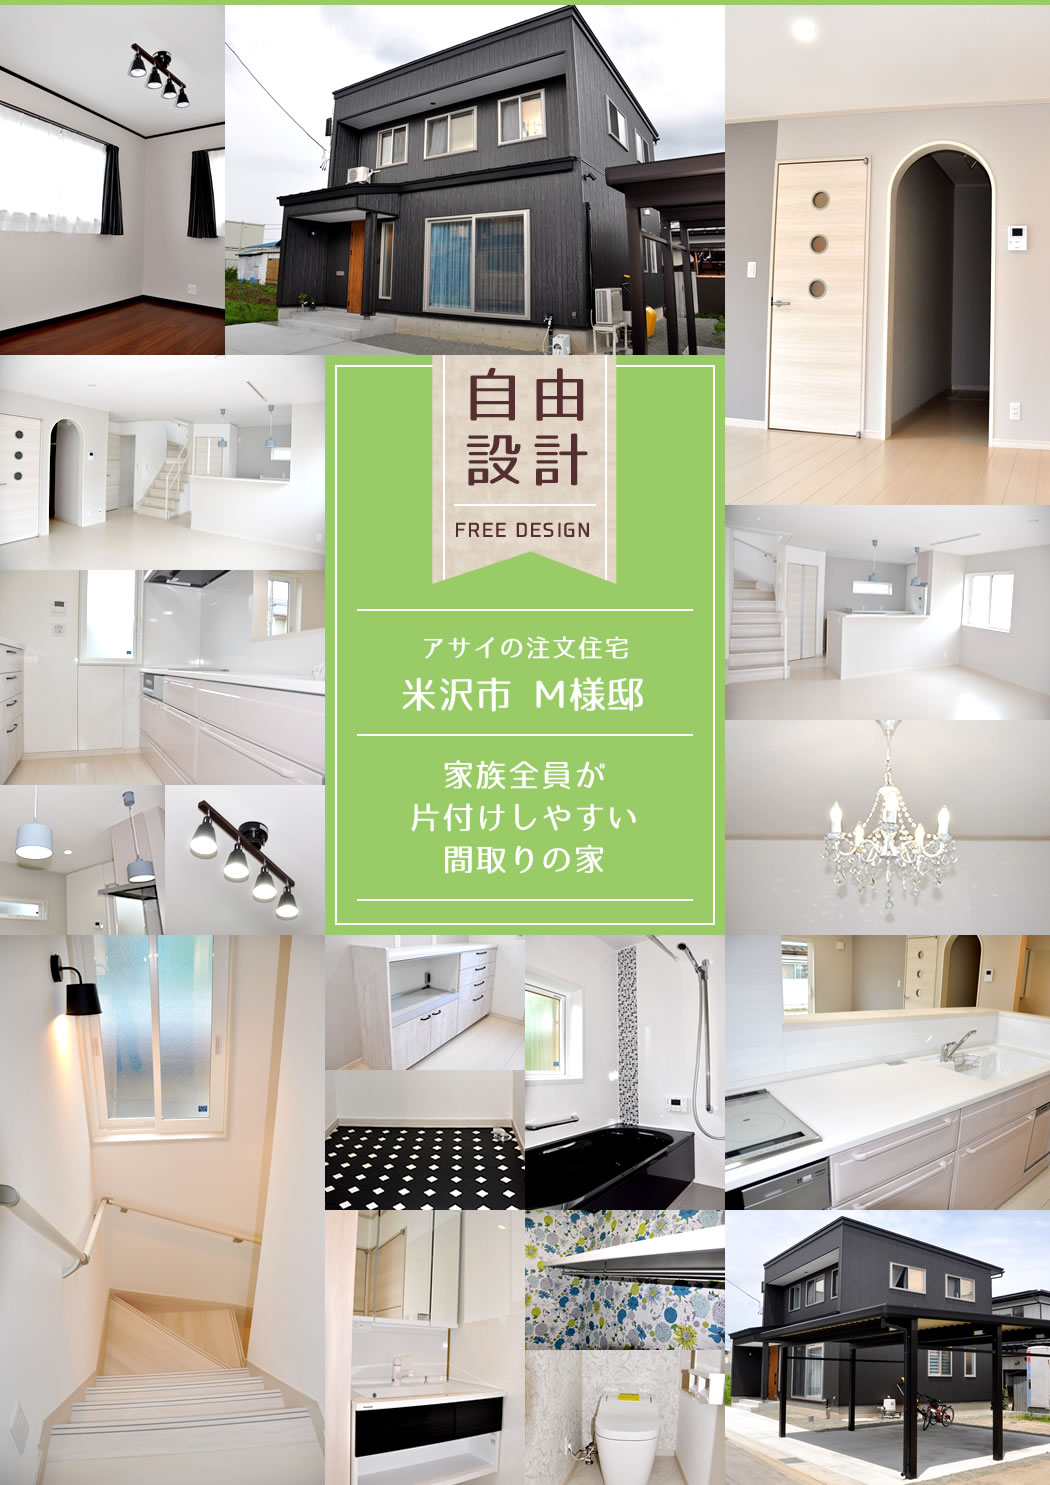 アサイの注文住宅 米沢市 S様邸 インナーガレージと癒し空間のある遊び心あふれる家